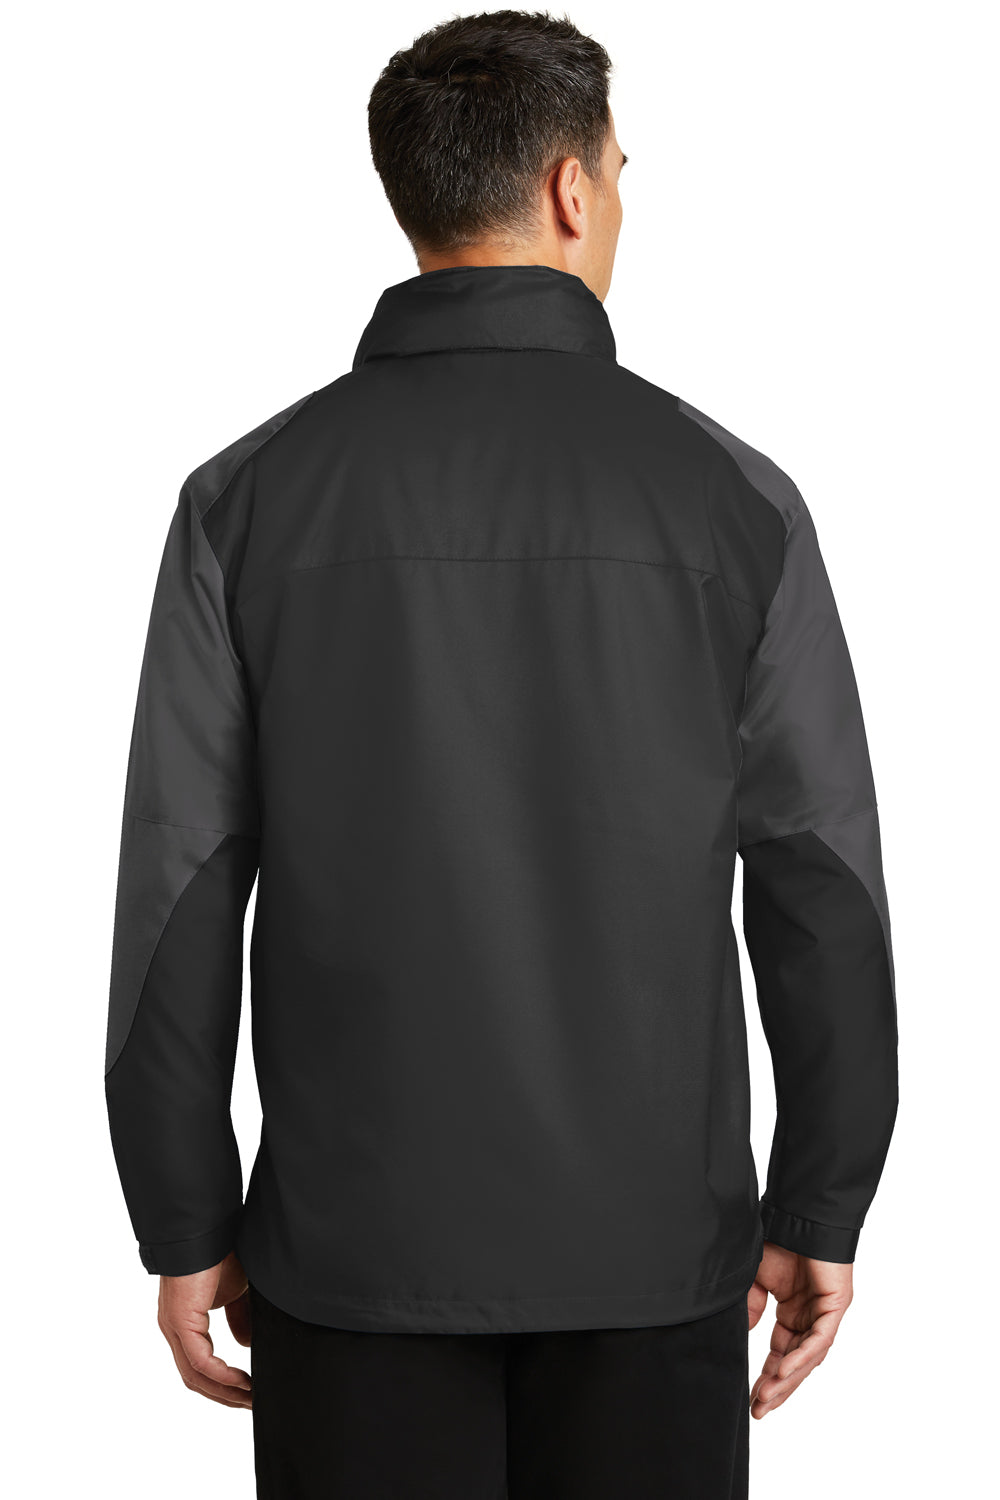 Port Authority J768 Mens Endeavor Wind & Water Resistant Full Zip Hooded Jacket Black/Grey Back